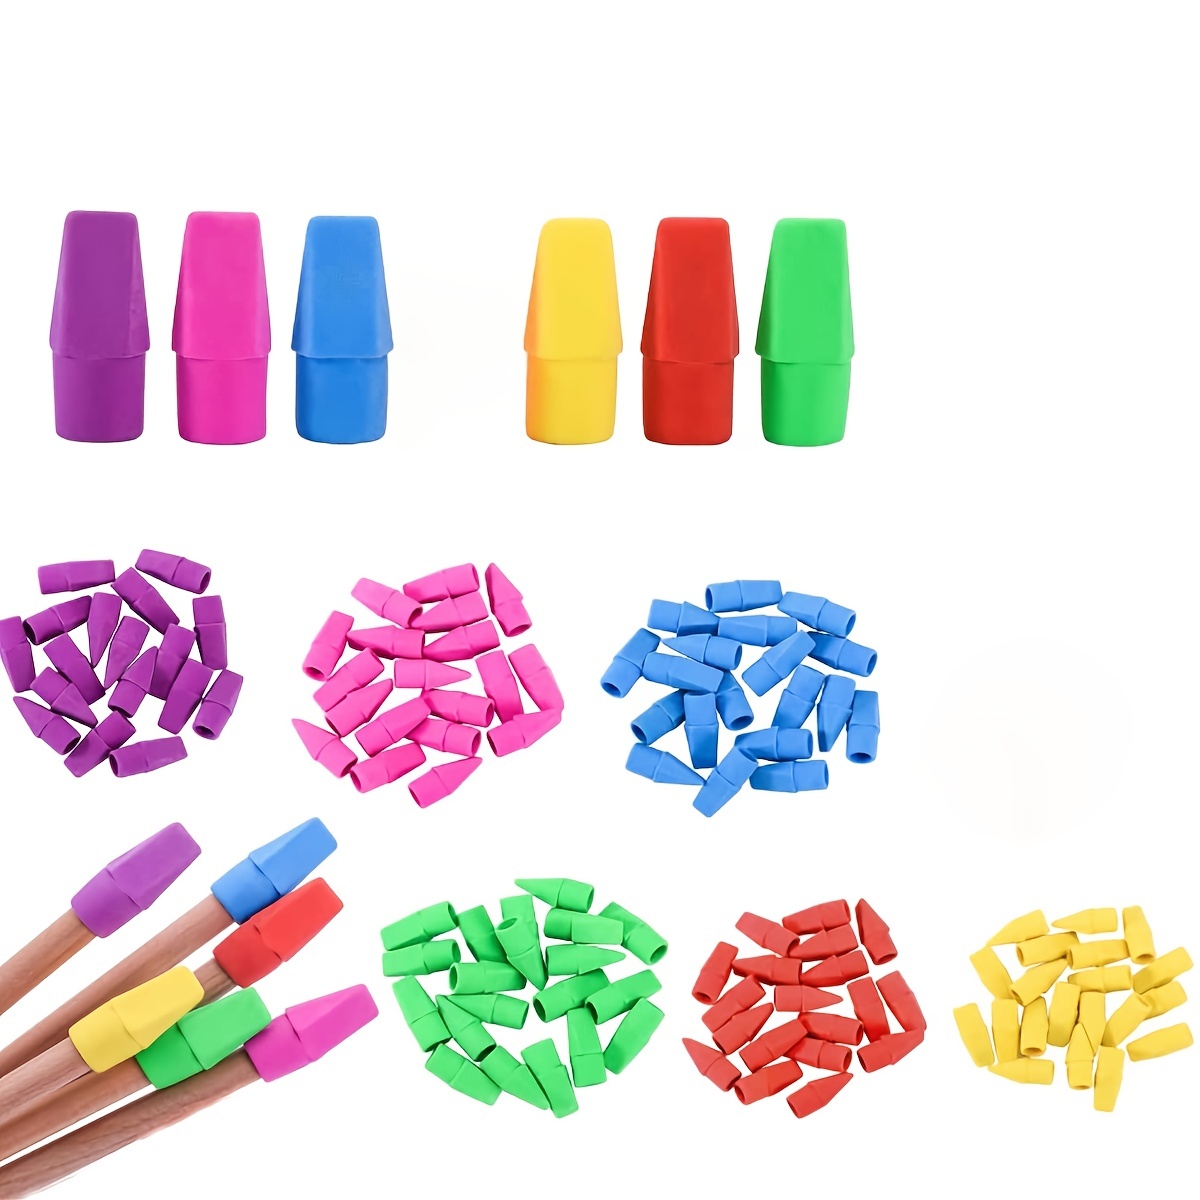 Pencil Erasers, Pencil Eraser Caps, School Supplies